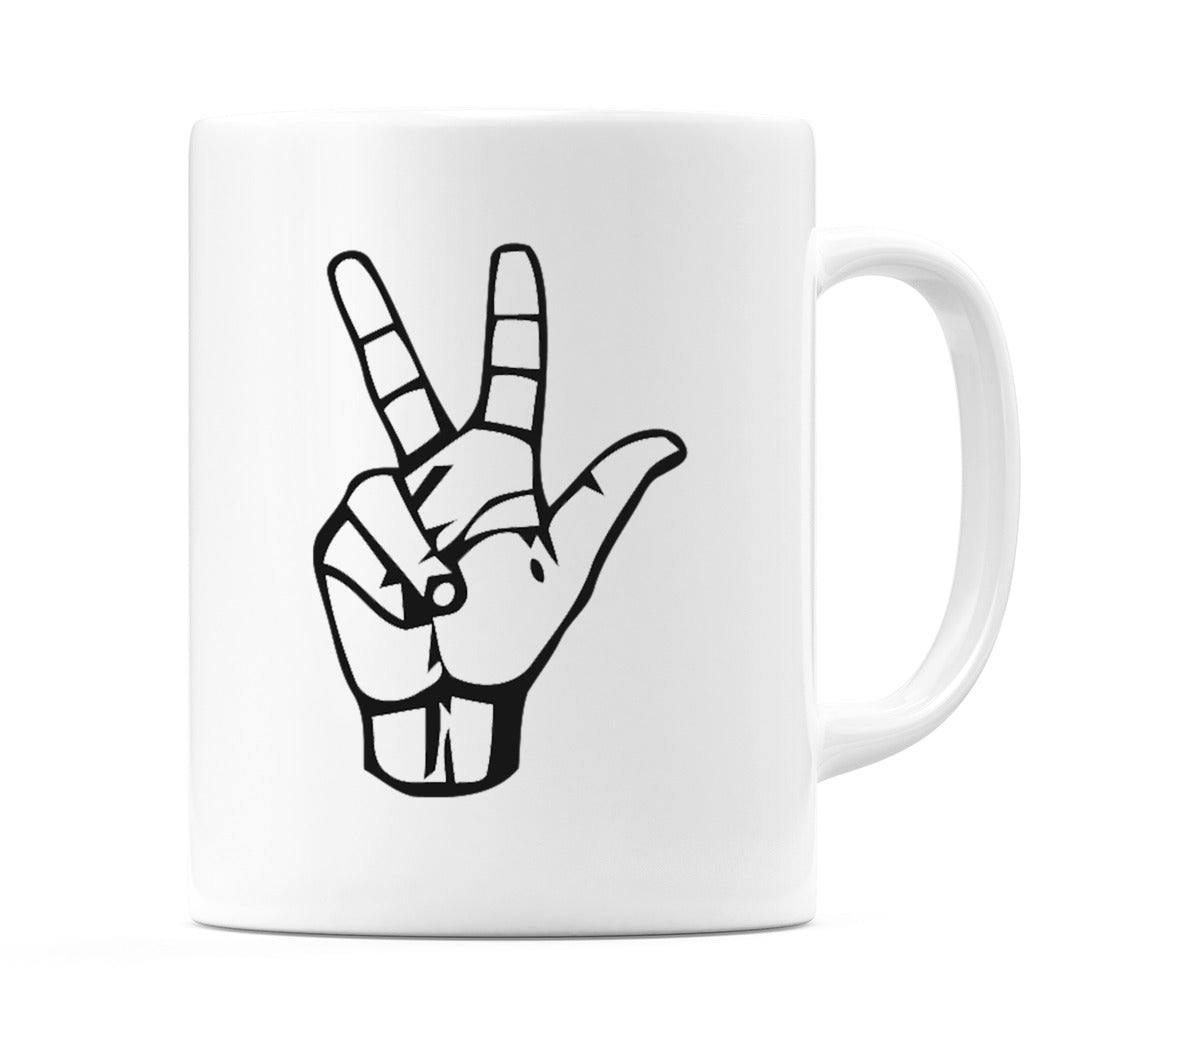 US Sign Language Number 3 Mug